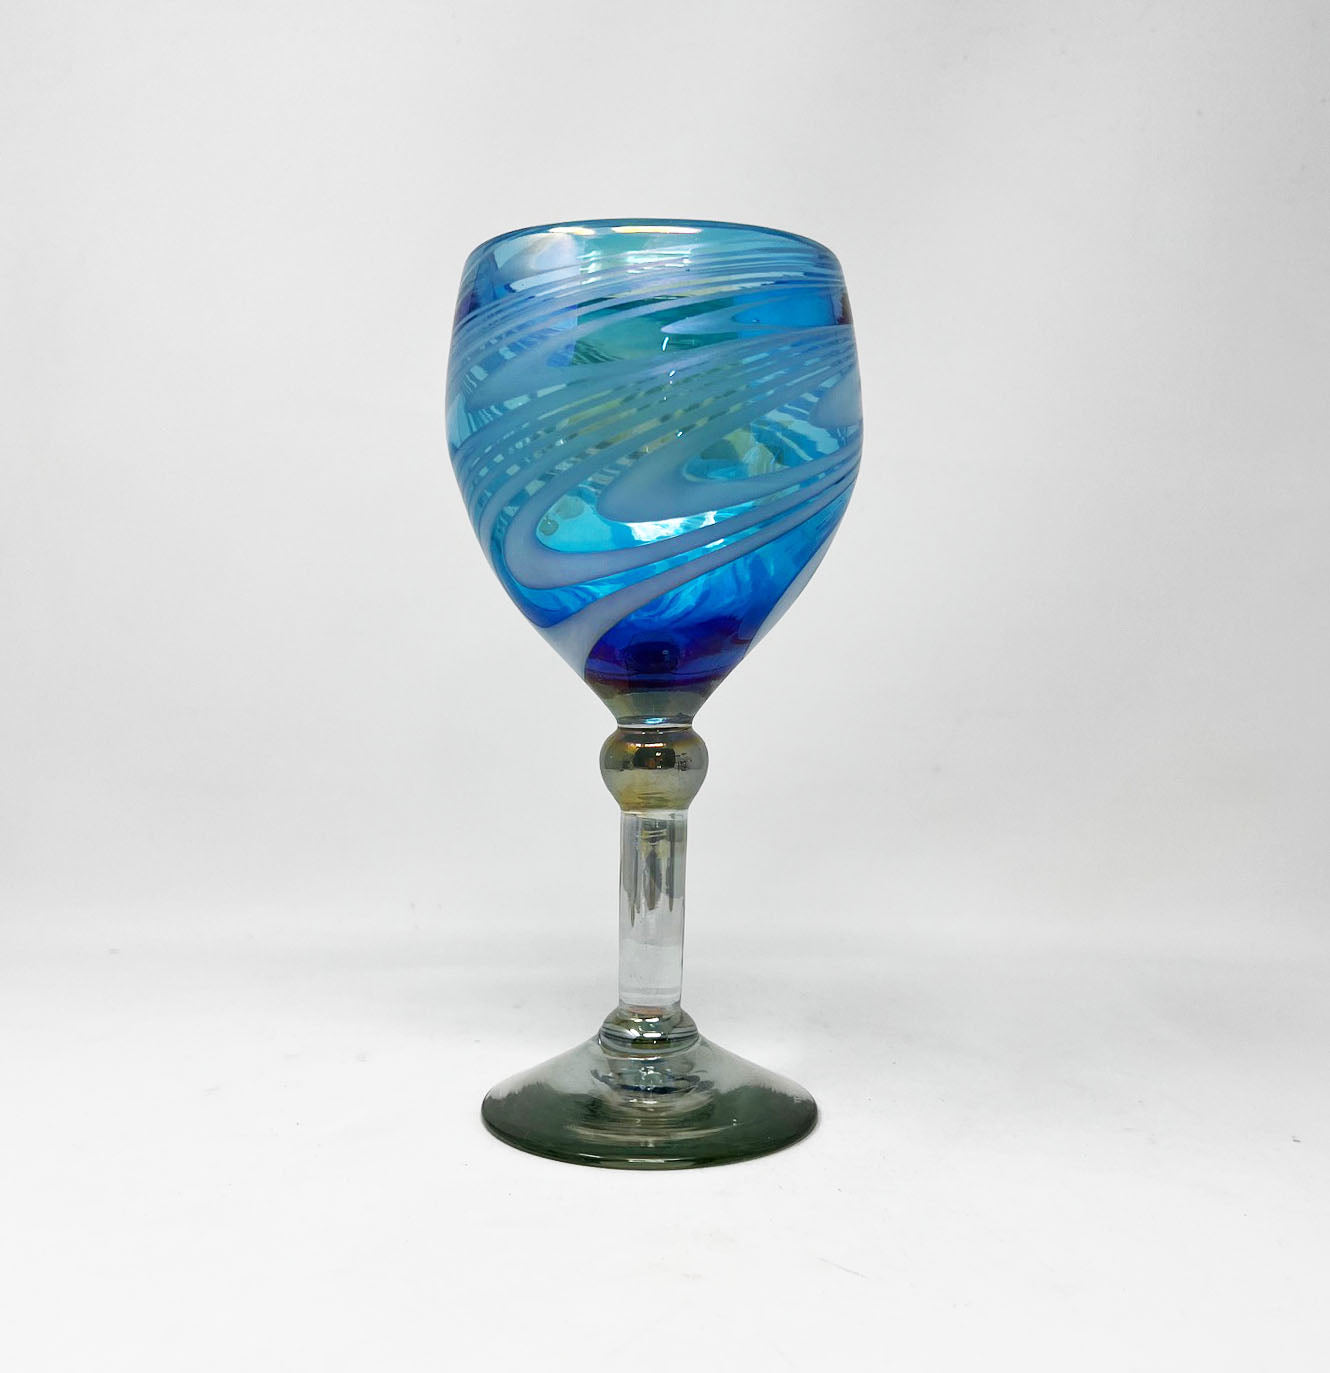 Hand Blown Wine Glass - Turquoise / White Iridescent Swirl